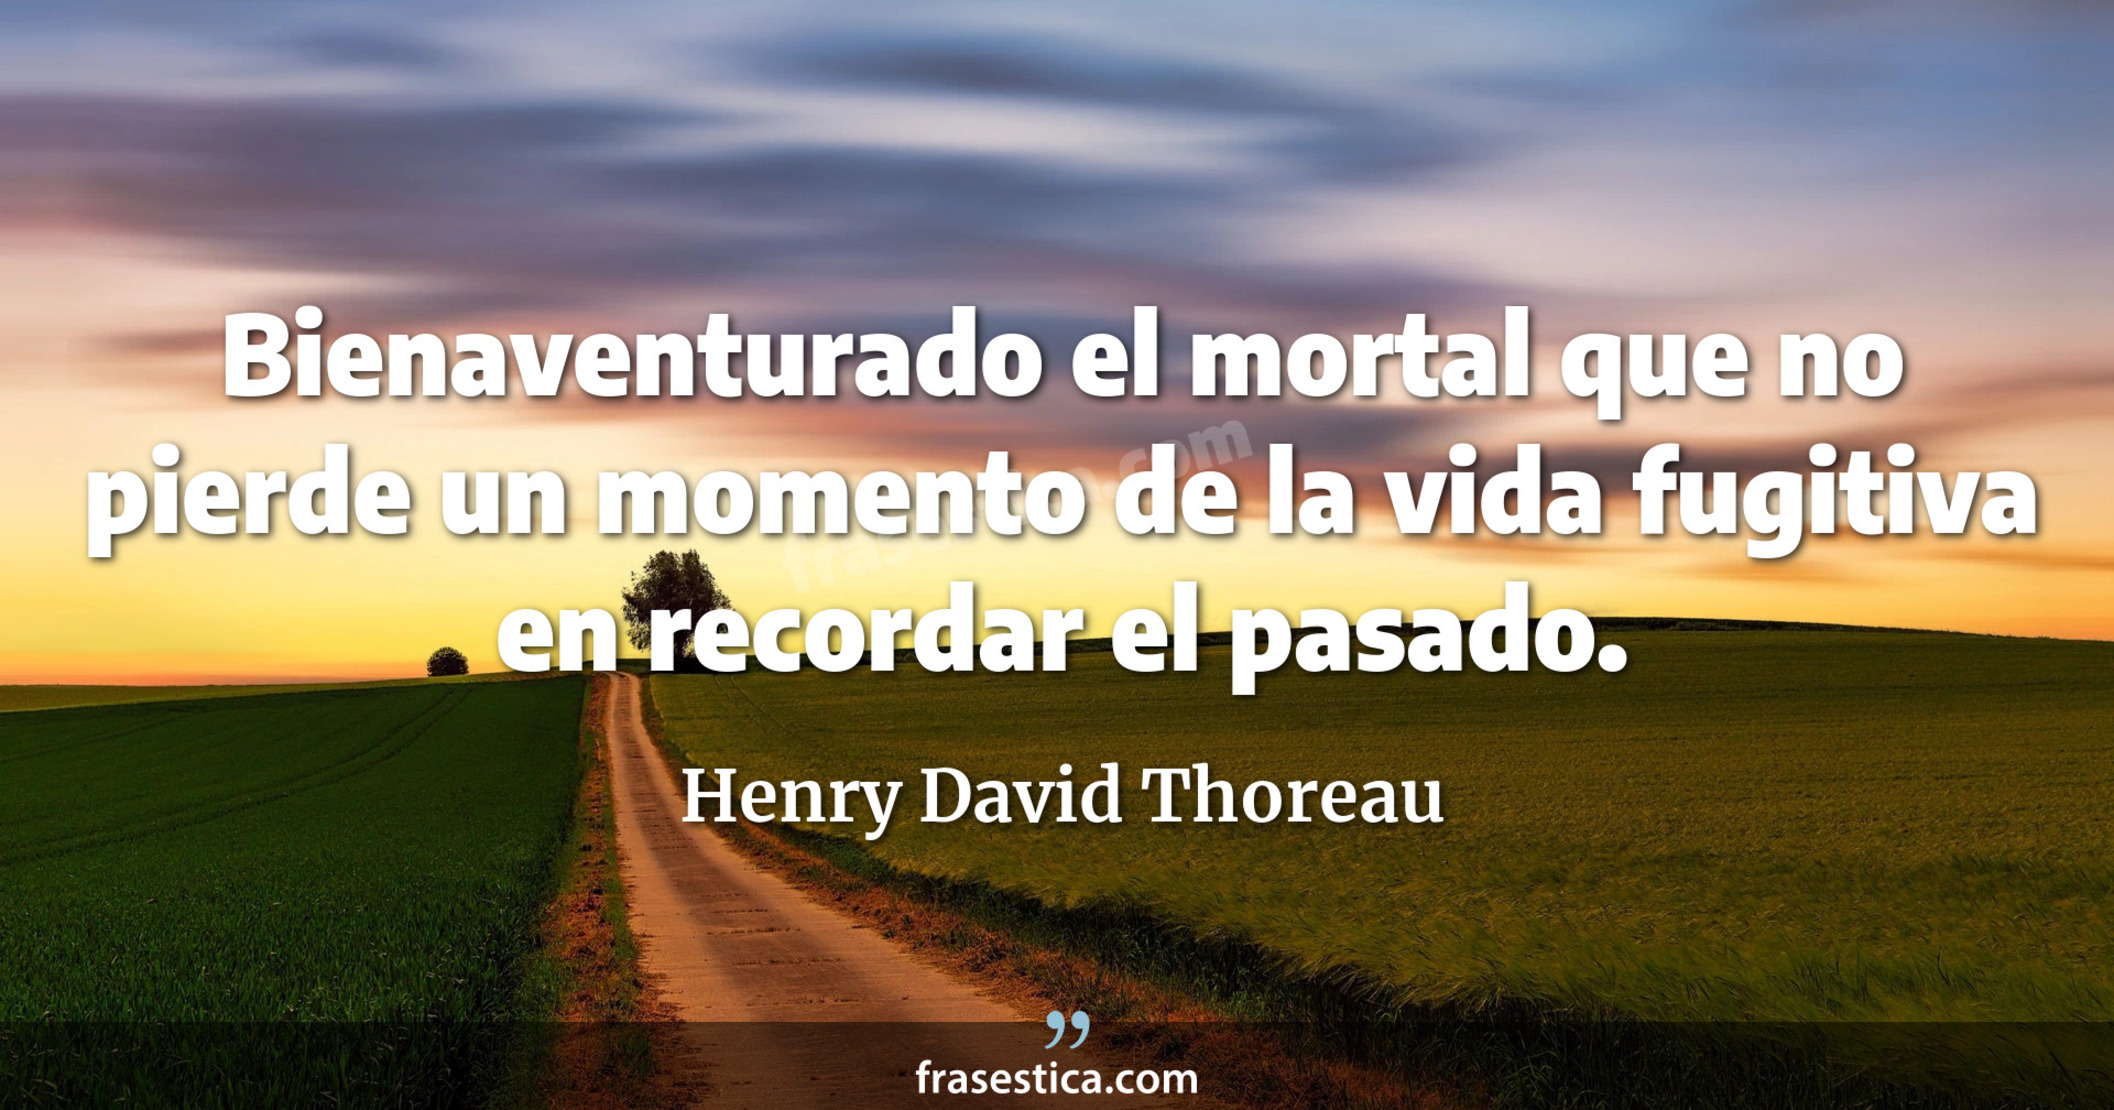 Bienaventurado el mortal que no pierde un momento de la vida fugitiva en recordar el pasado. - Henry David Thoreau